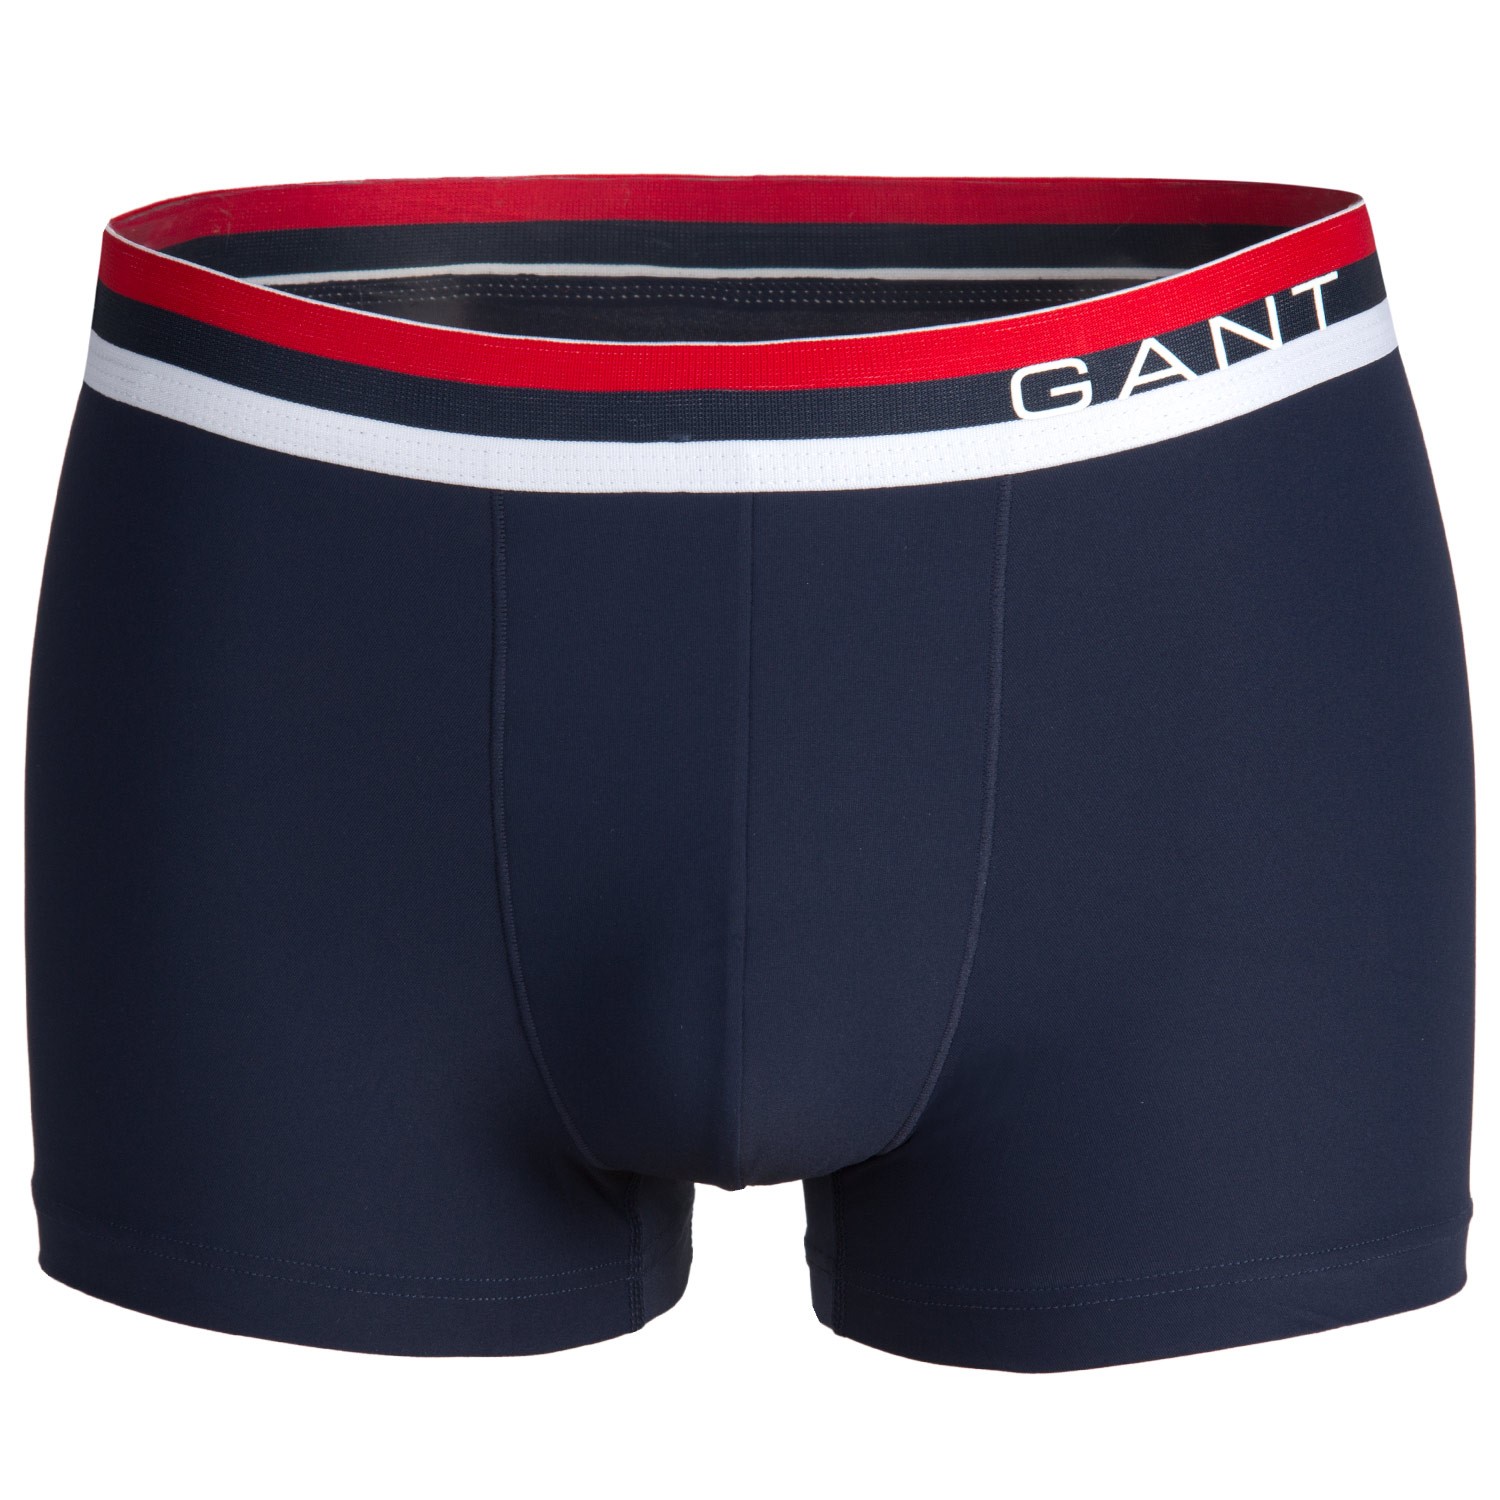 Gant Premium Microfiber Trunk 